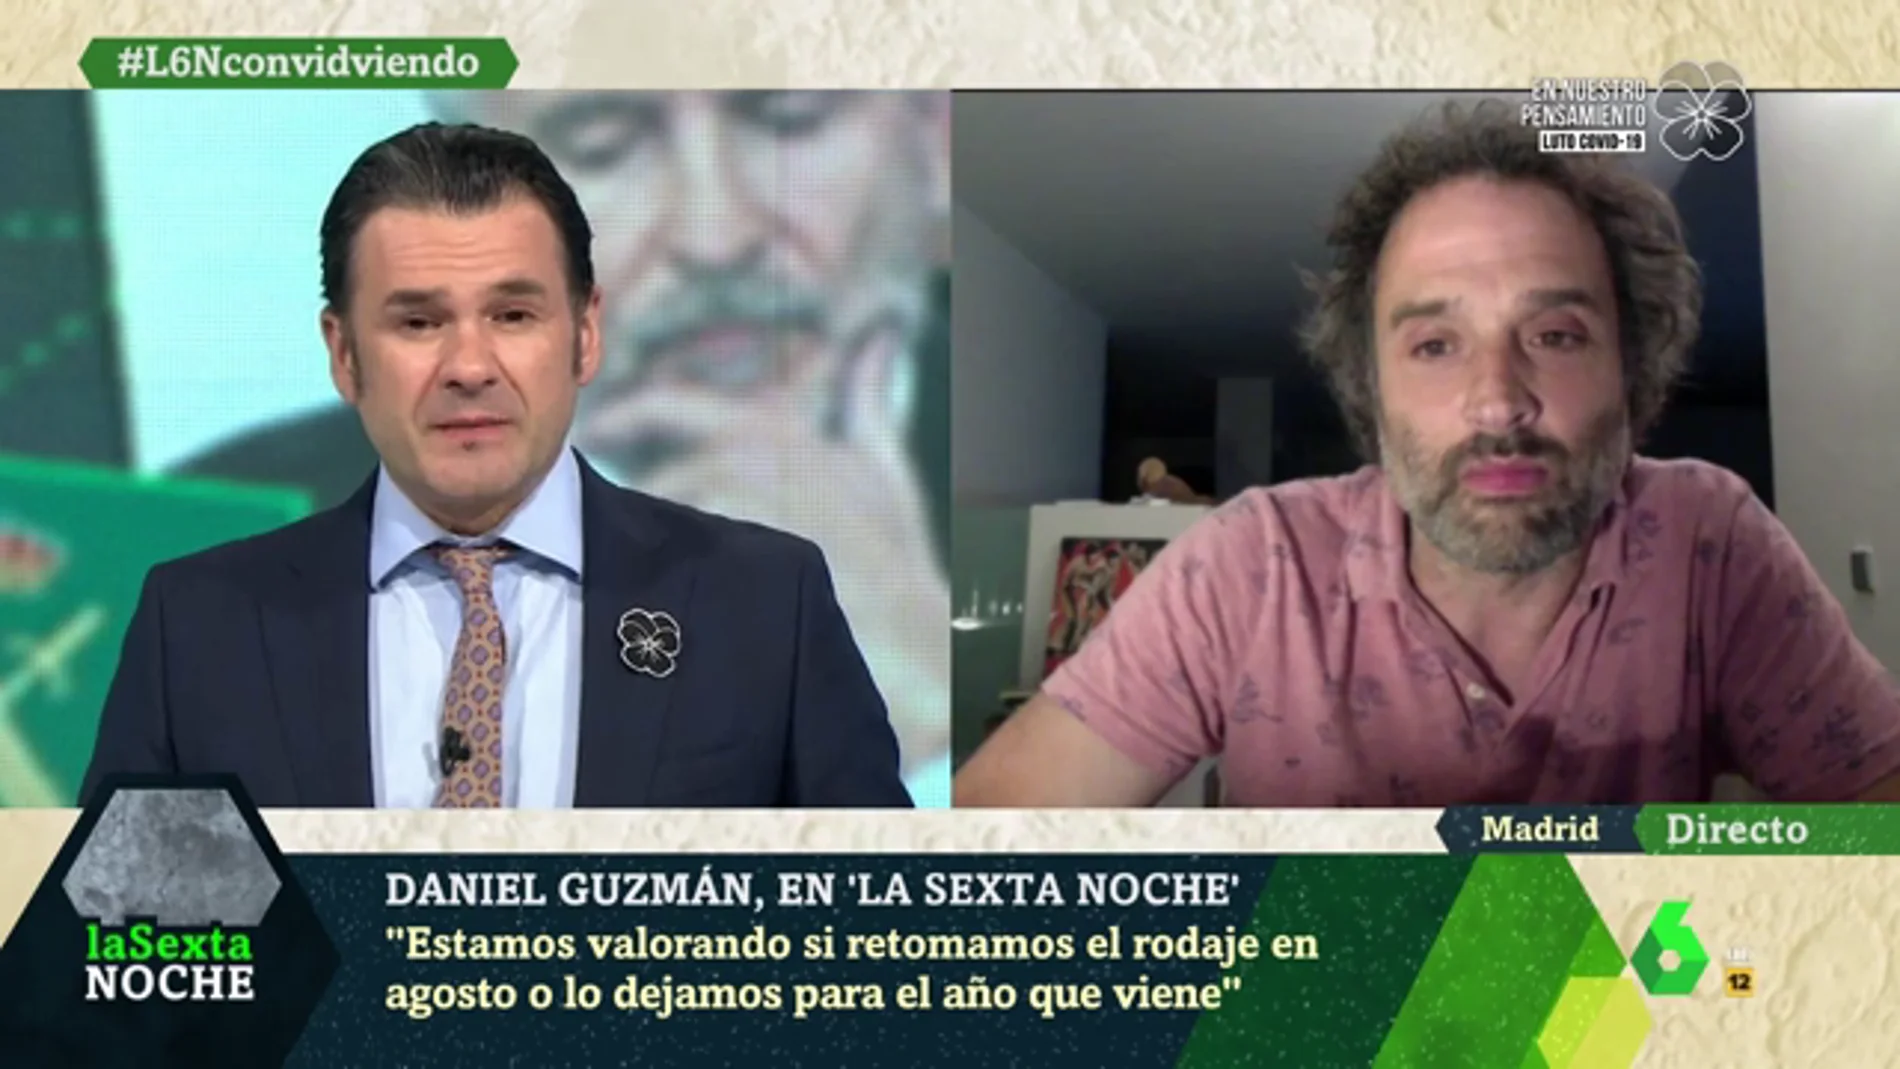 Daniel Guzmán: "Ya está bien de crispación, tenemos que salir de esta lo más unidos posible"